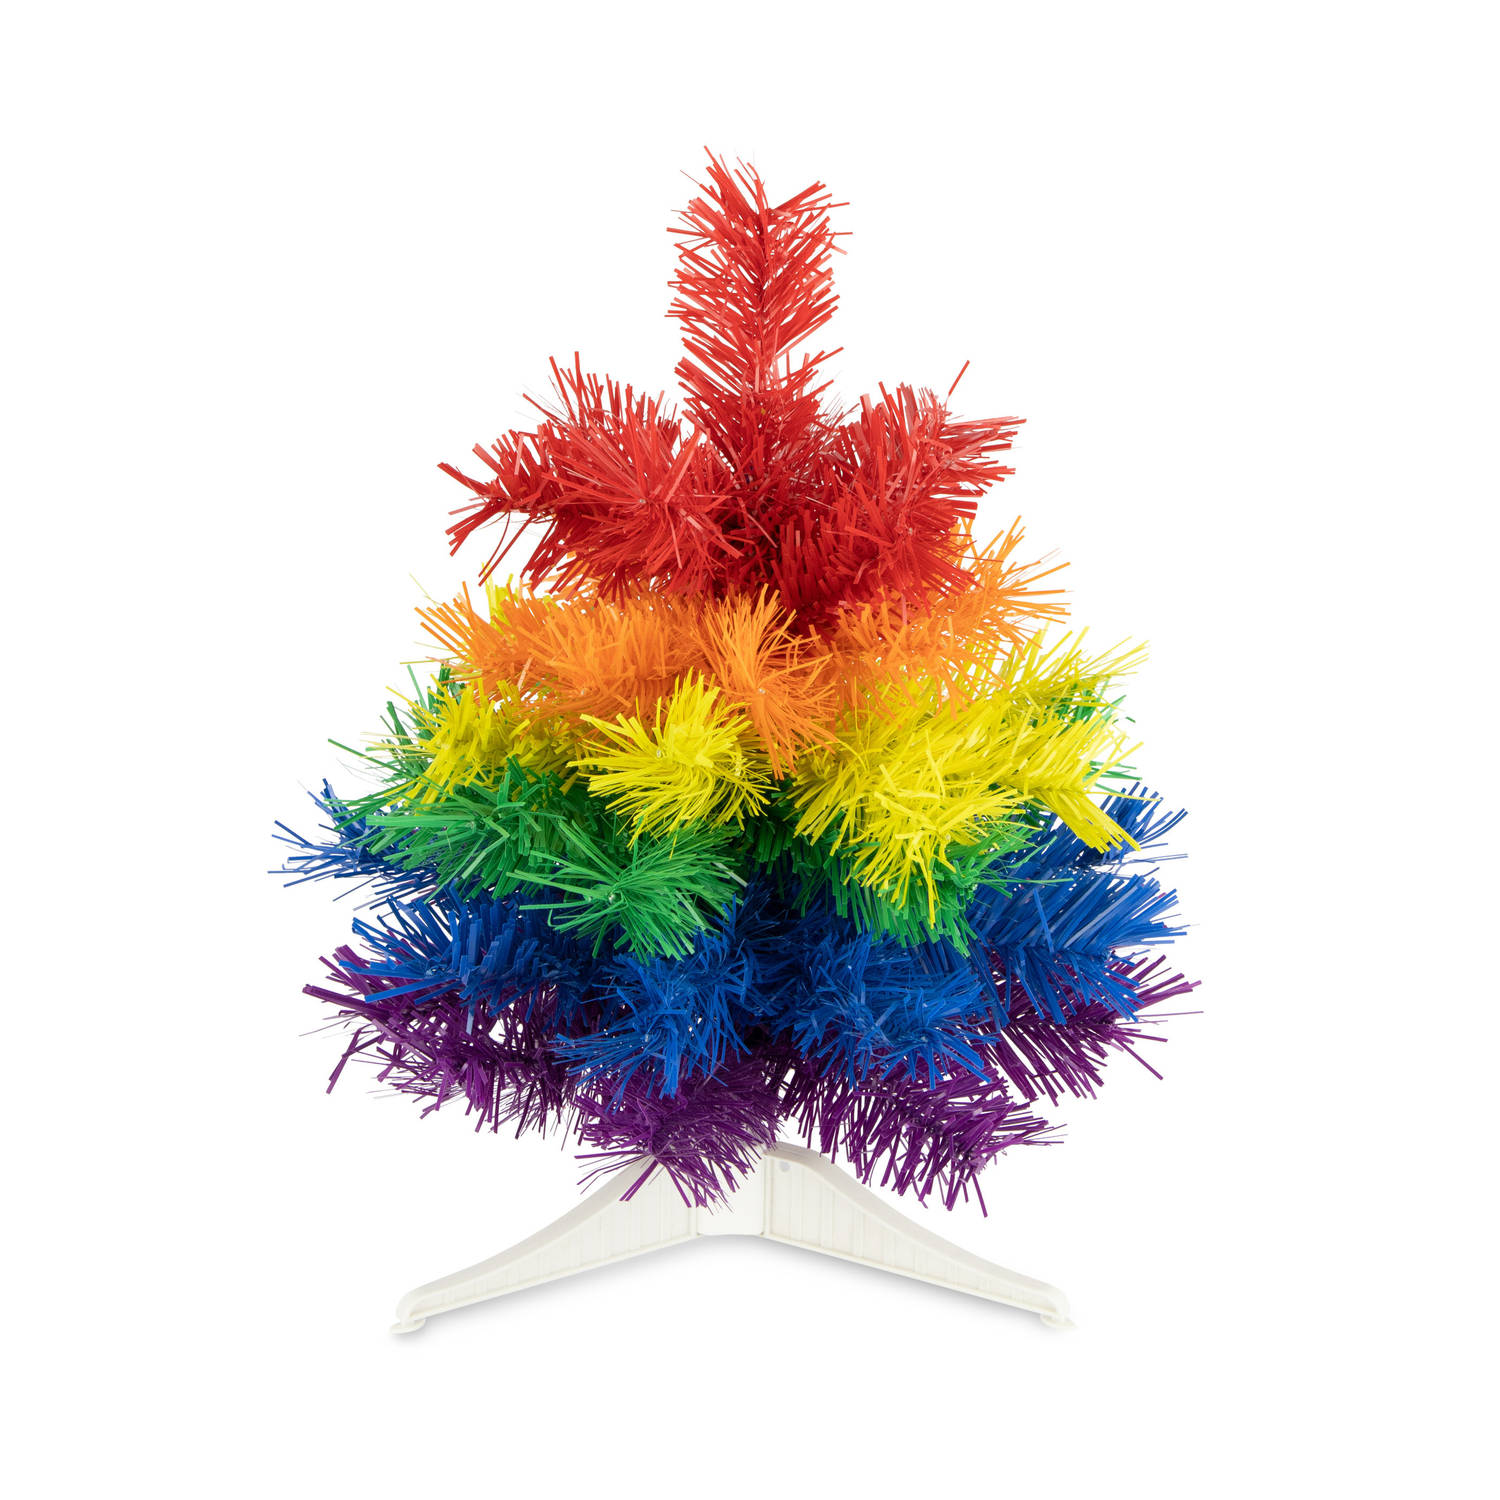 R en W kunst kerstboom klein - regenboog kleuren - H30 cmA?Æ?A¢a?¬A¡A?a??A?A - kunststof - Kunstkerstboom